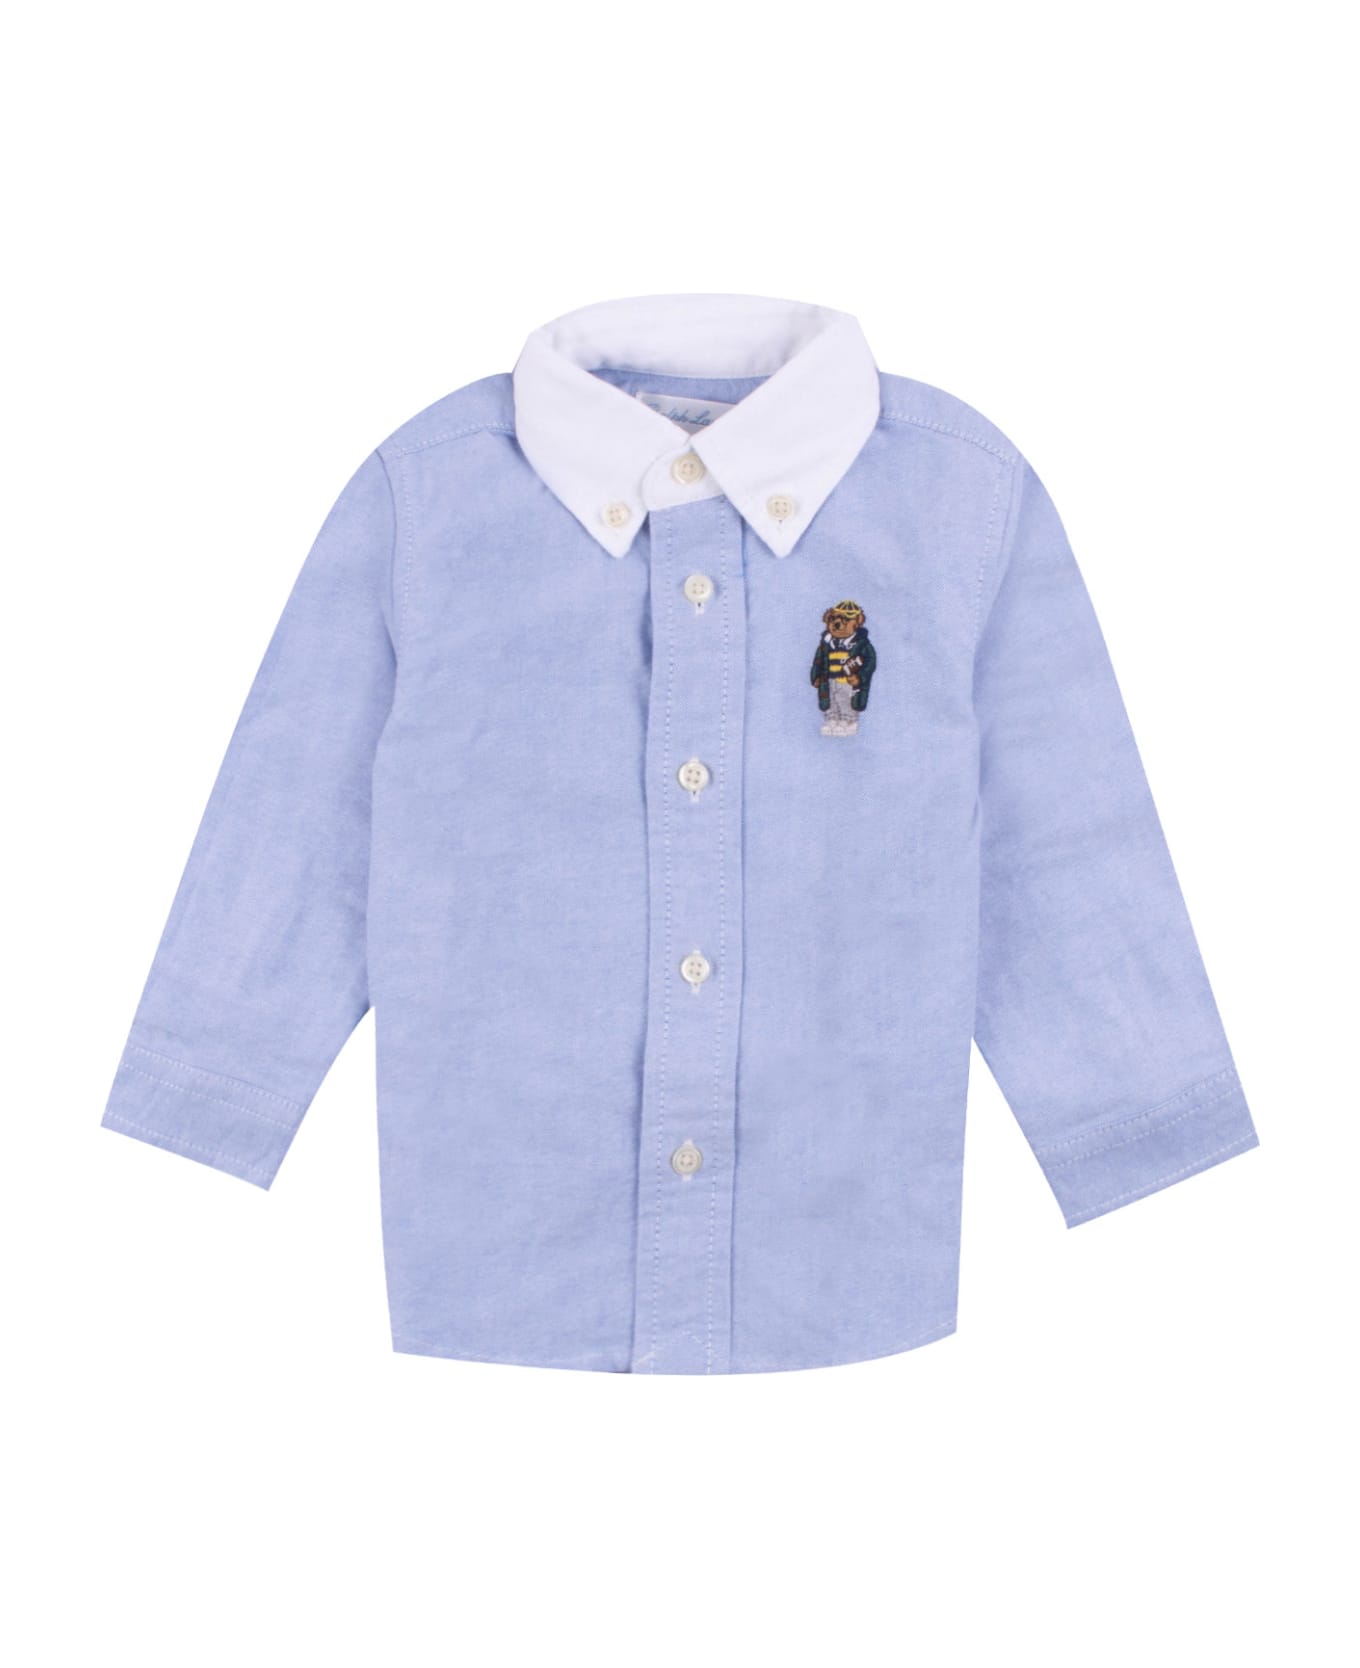 Ralph Lauren Cotton Shirt - Light blue シャツ